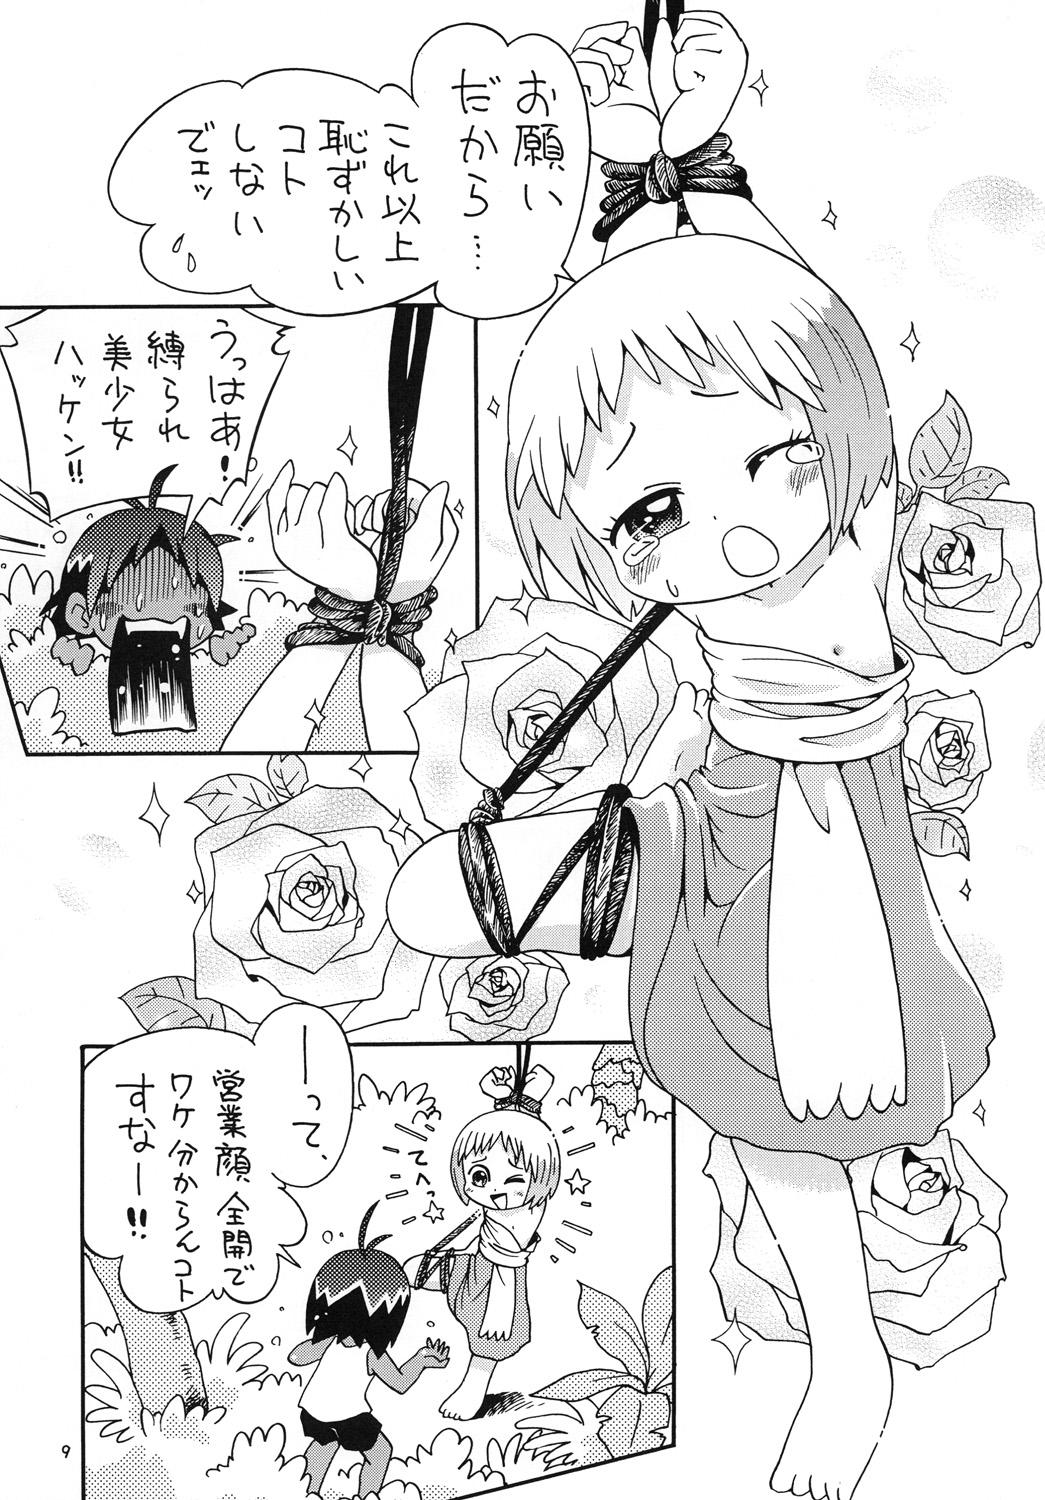 Slutty Hotto☆Squall - Jungle wa itsumo hare nochi guu Couple - Page 8